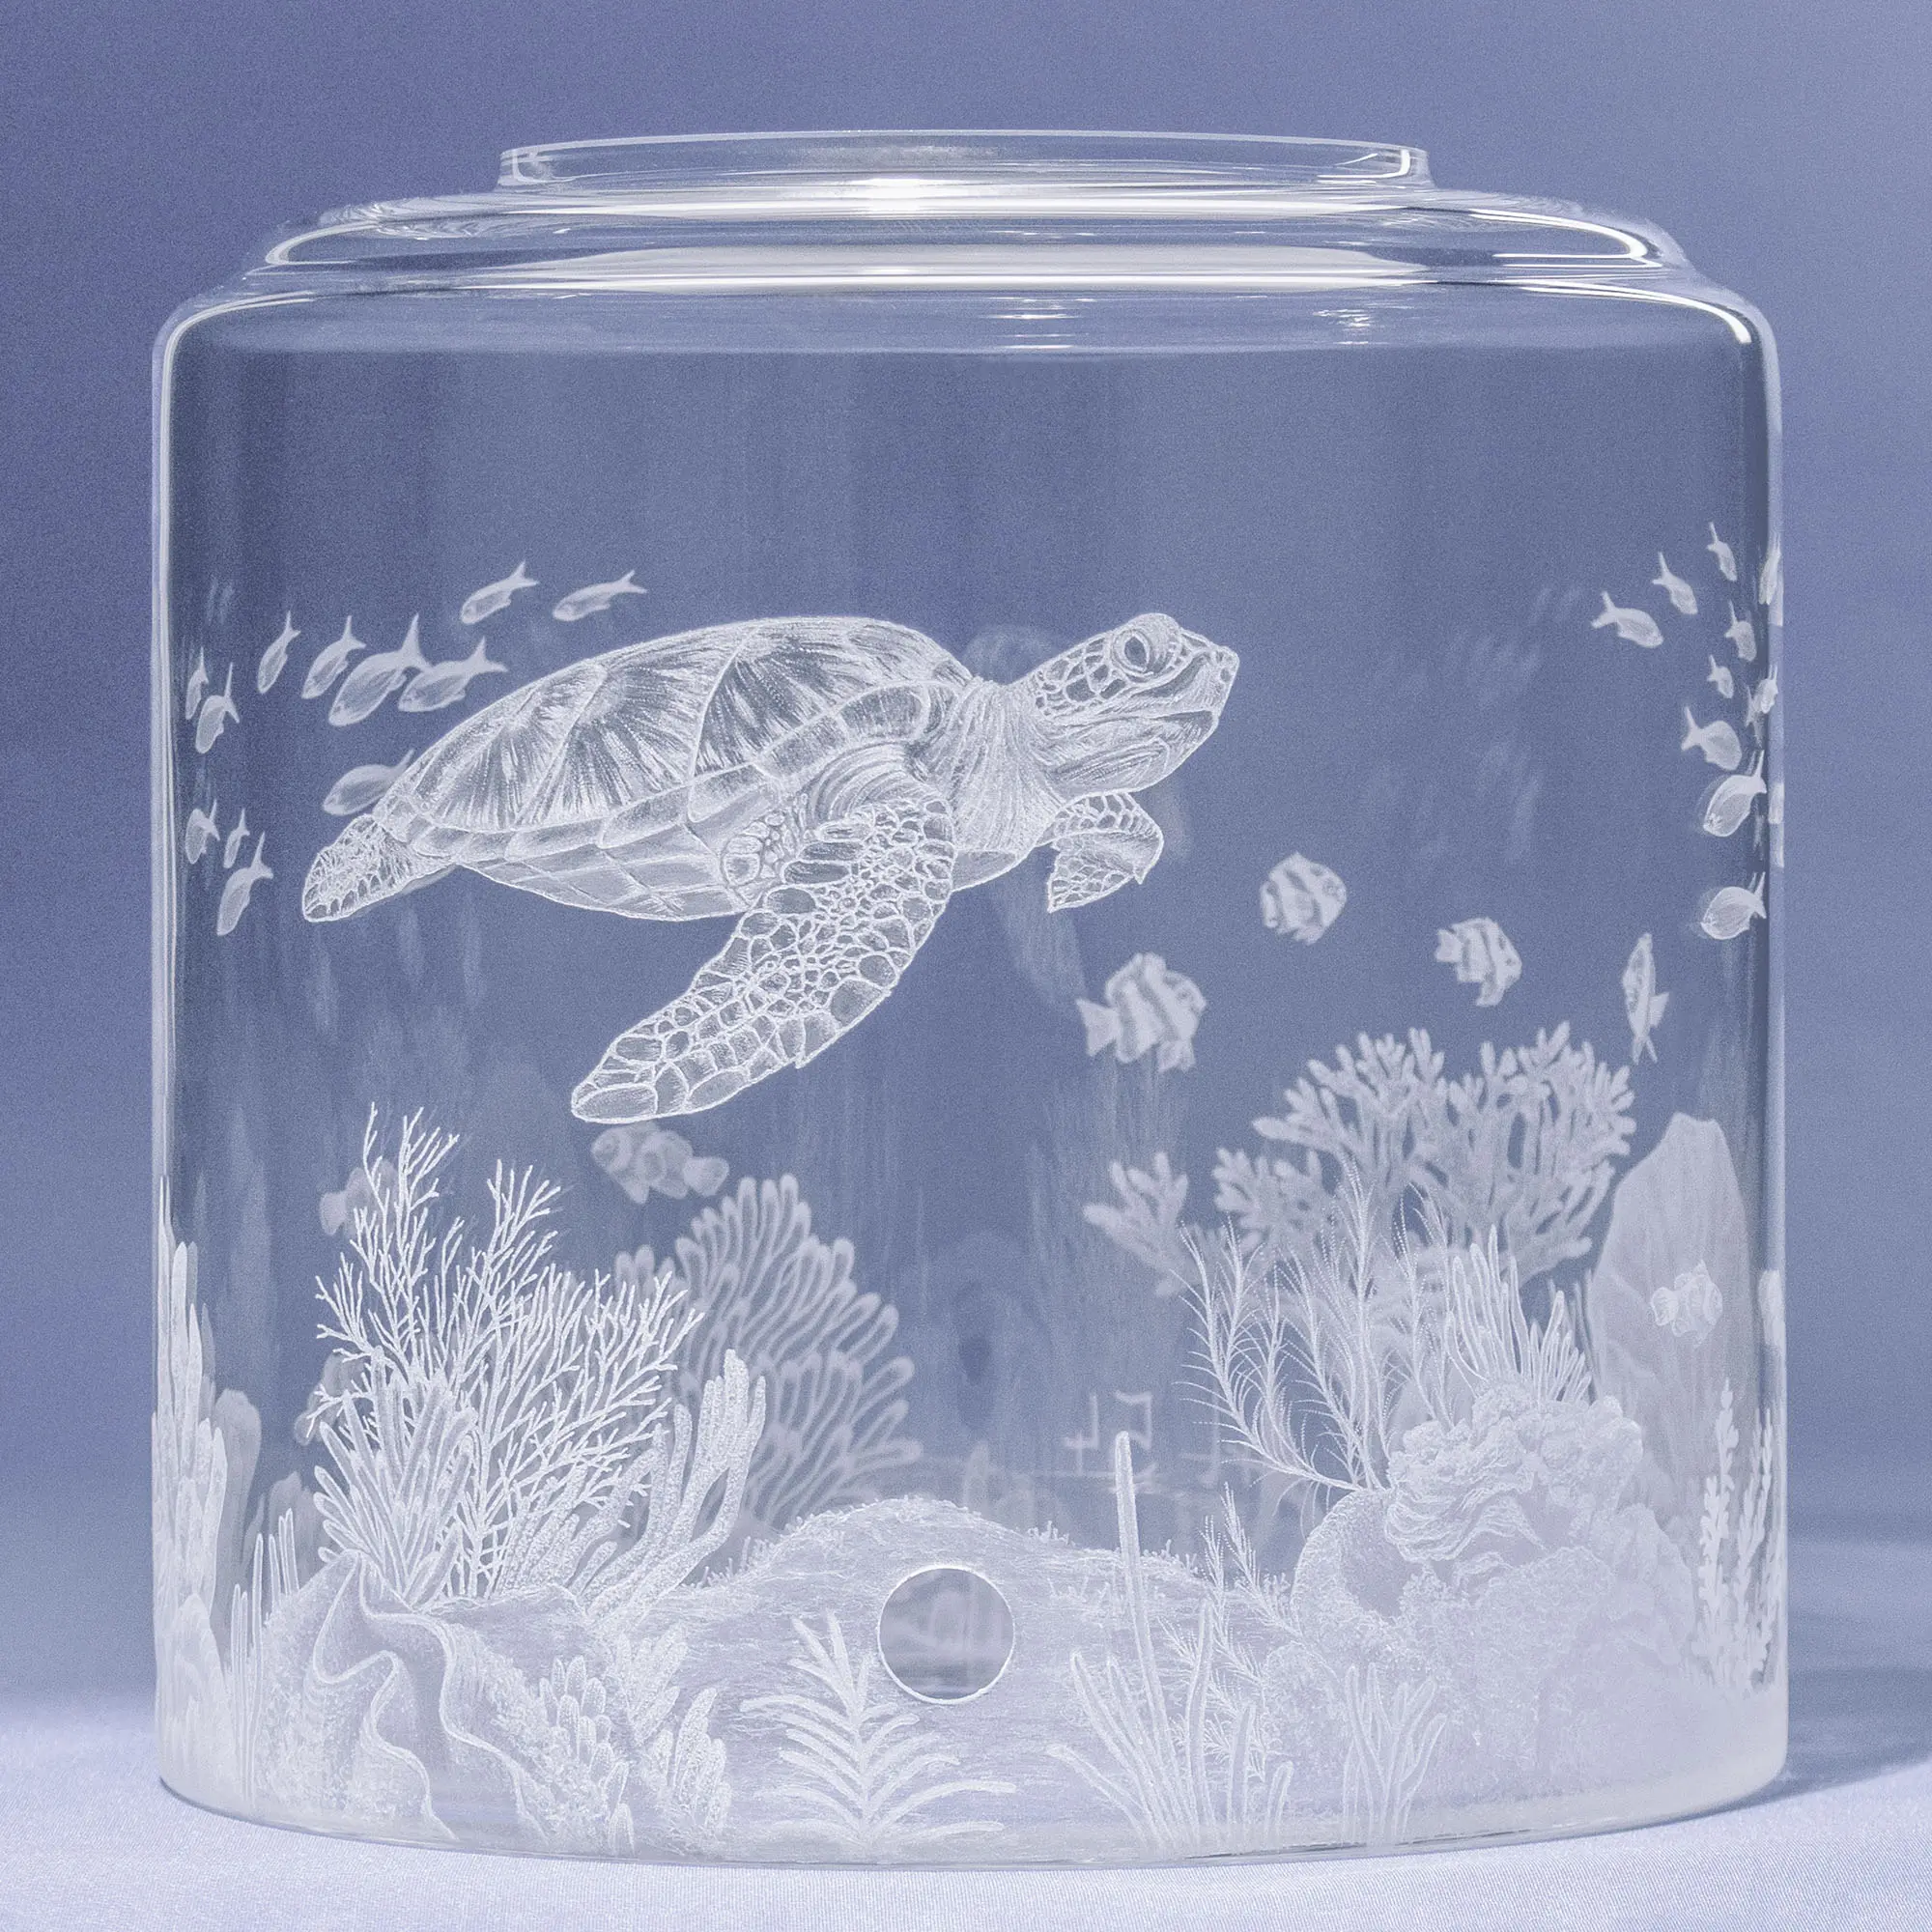 Auf dem Bild ist ein Wassertank für Acala Wasserfilter mit einer Handgravur die ein Riff mit Fischen,Korallen und einer schönen Schildkröte dargestellt wird